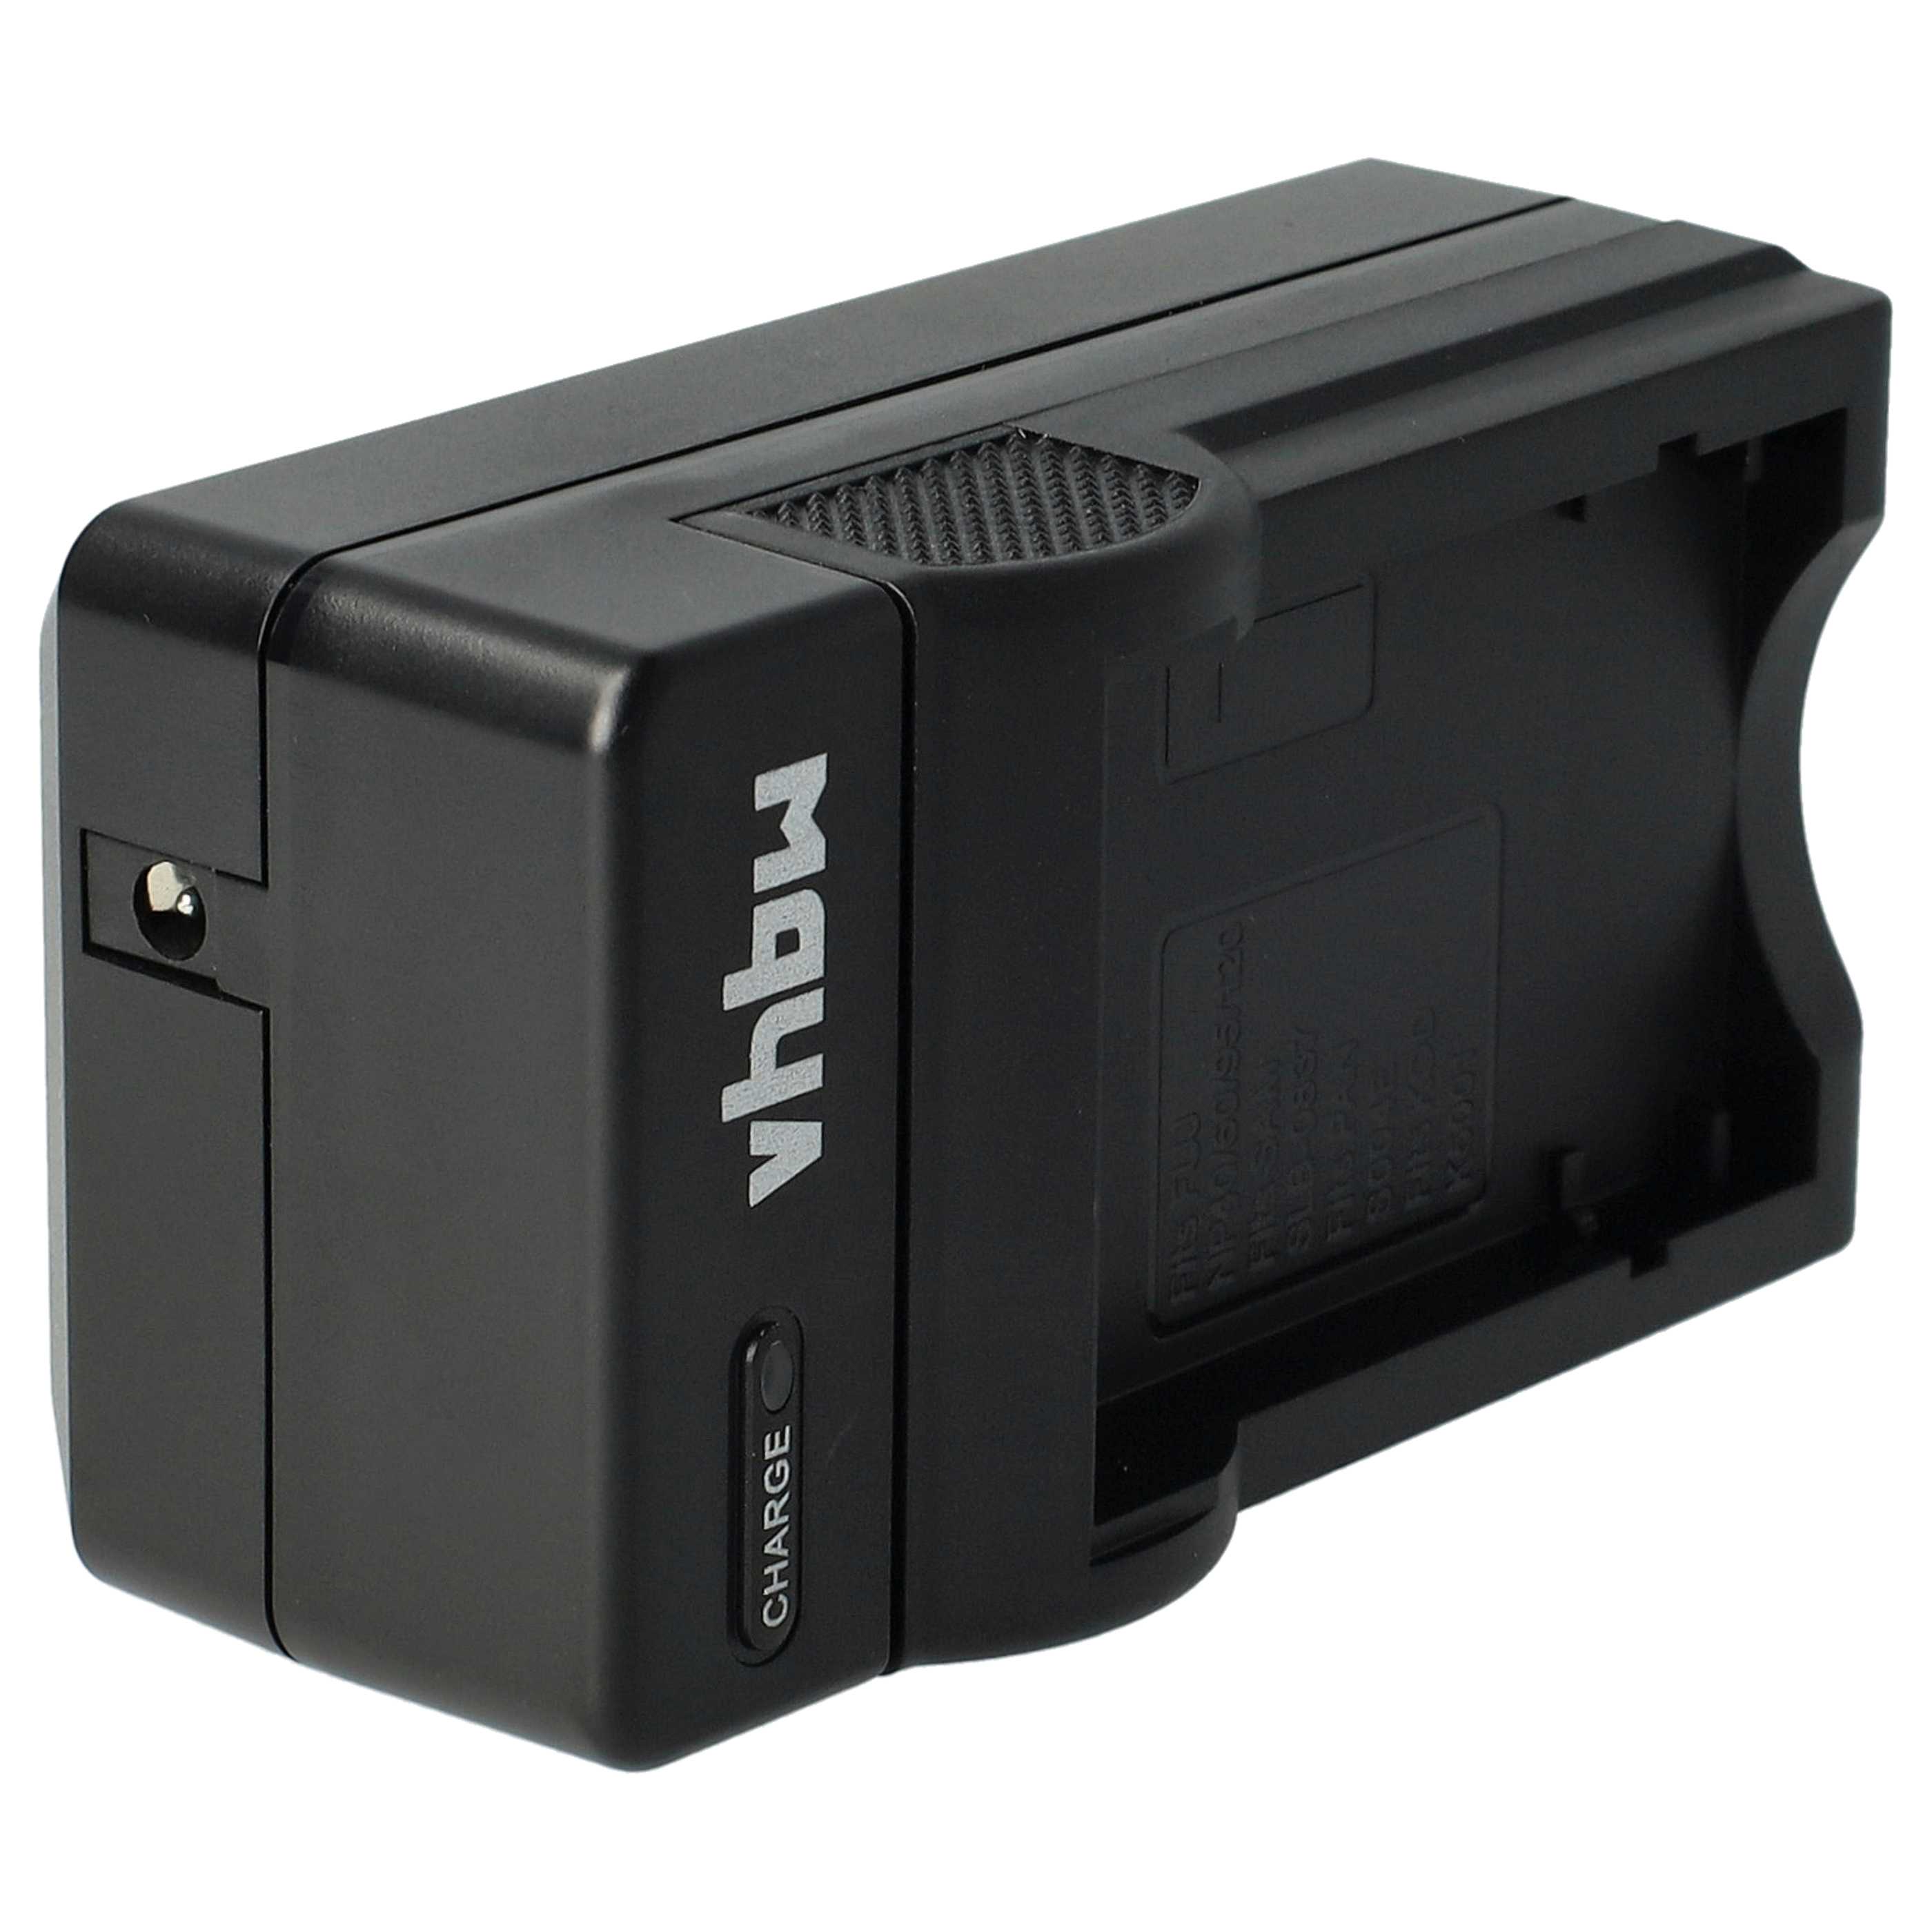 Akku Ladegerät passend für Praktica Digitalkamera und weitere - 0,6 A, 4,2 V